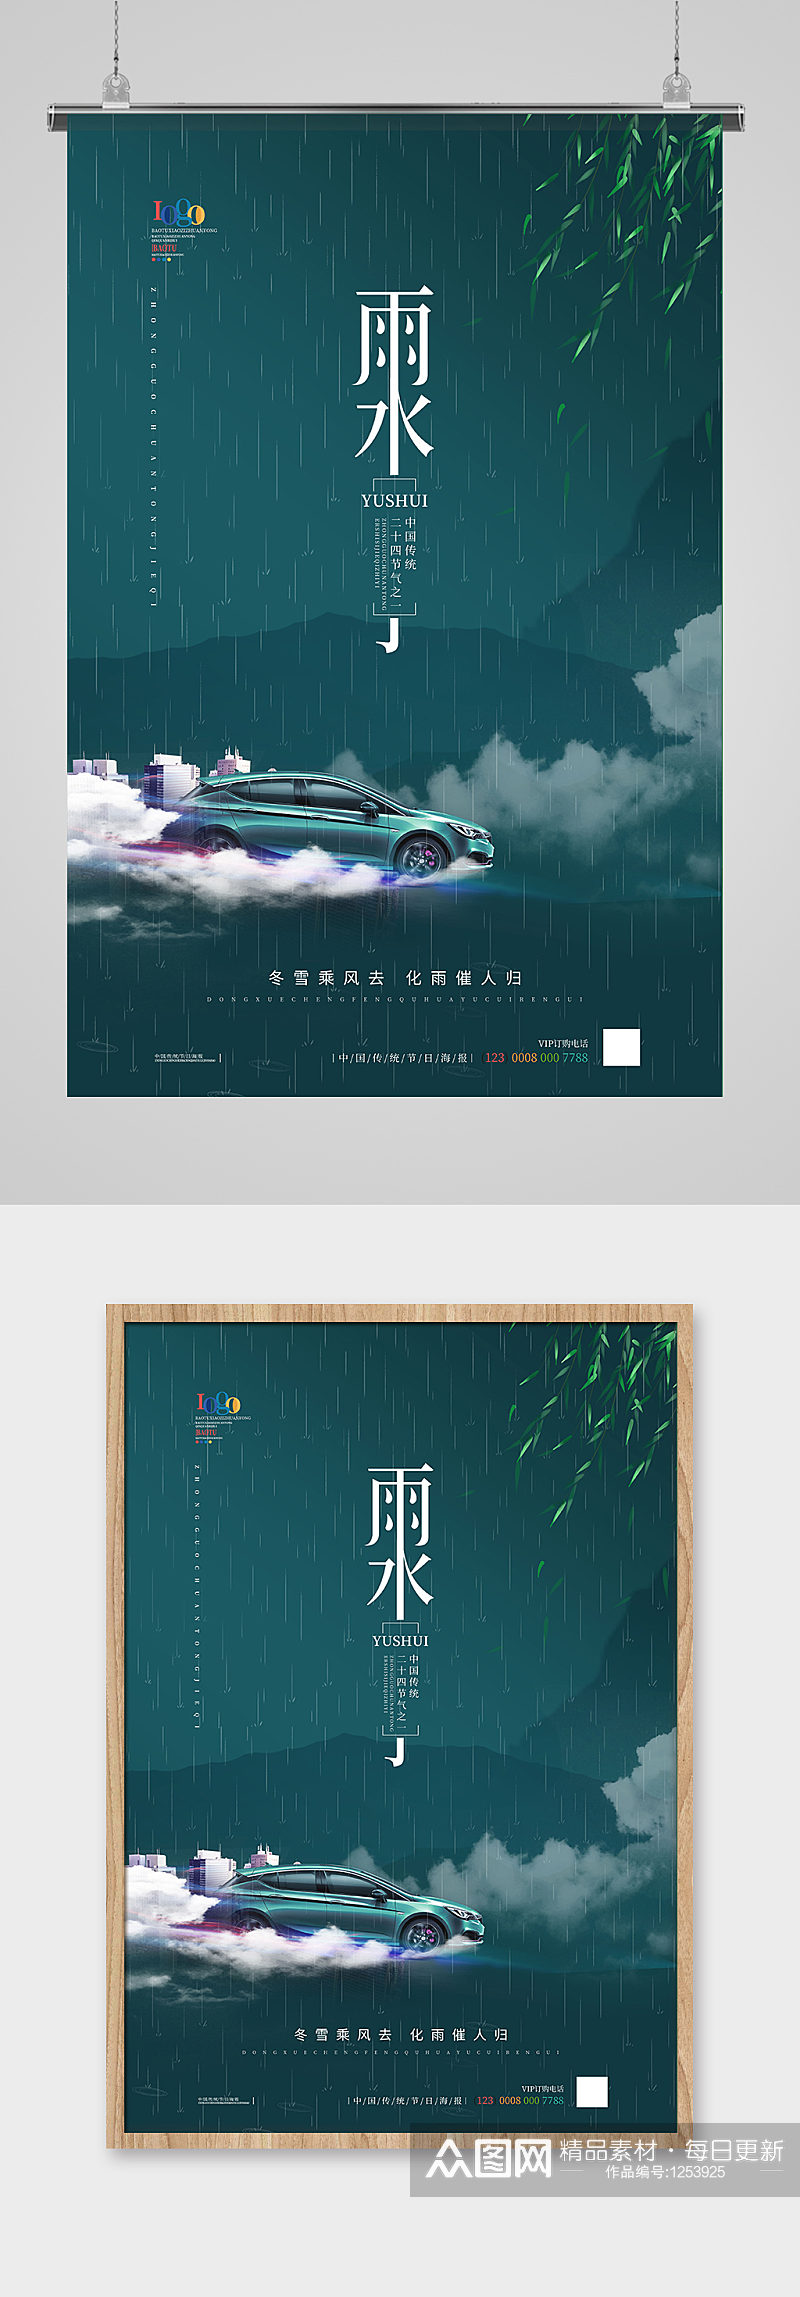 简约中国风汽车雨水节气主题海报素材